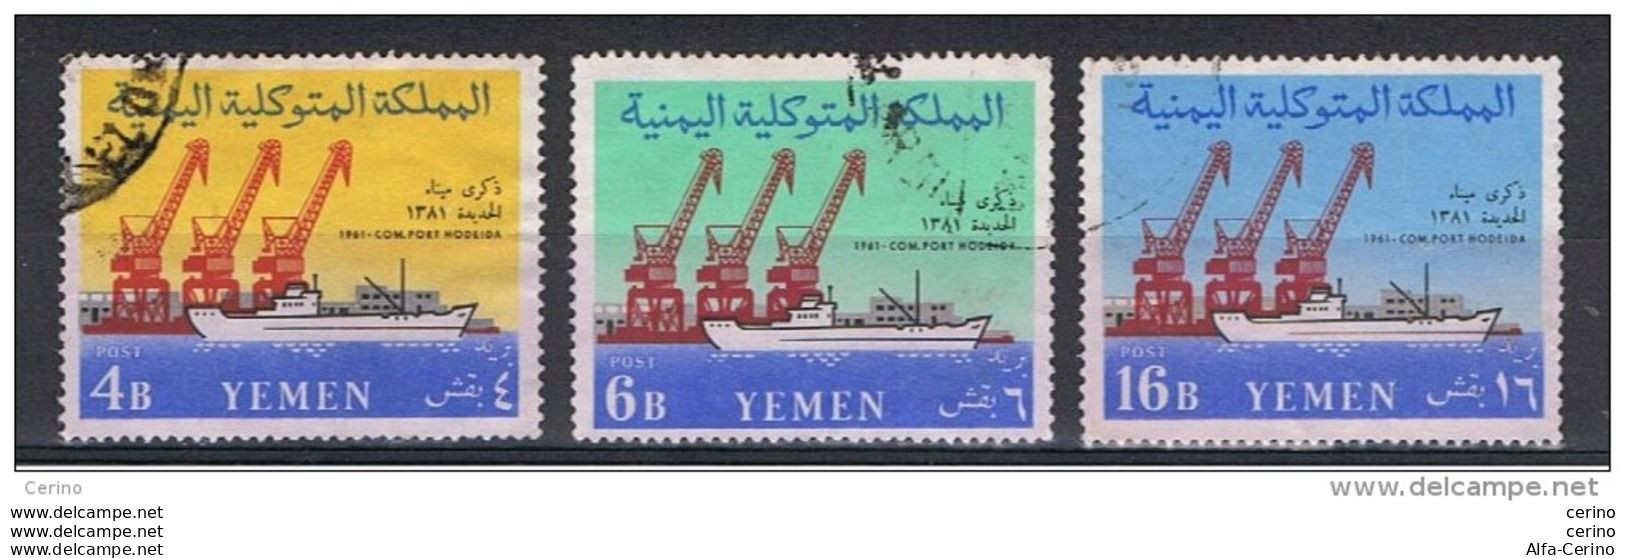 YEMEN:  1961  HODEIDA  -  KOMPLET  SET  3  USED  STAMPS  -  YV/TELL. 96/98 - Yemen